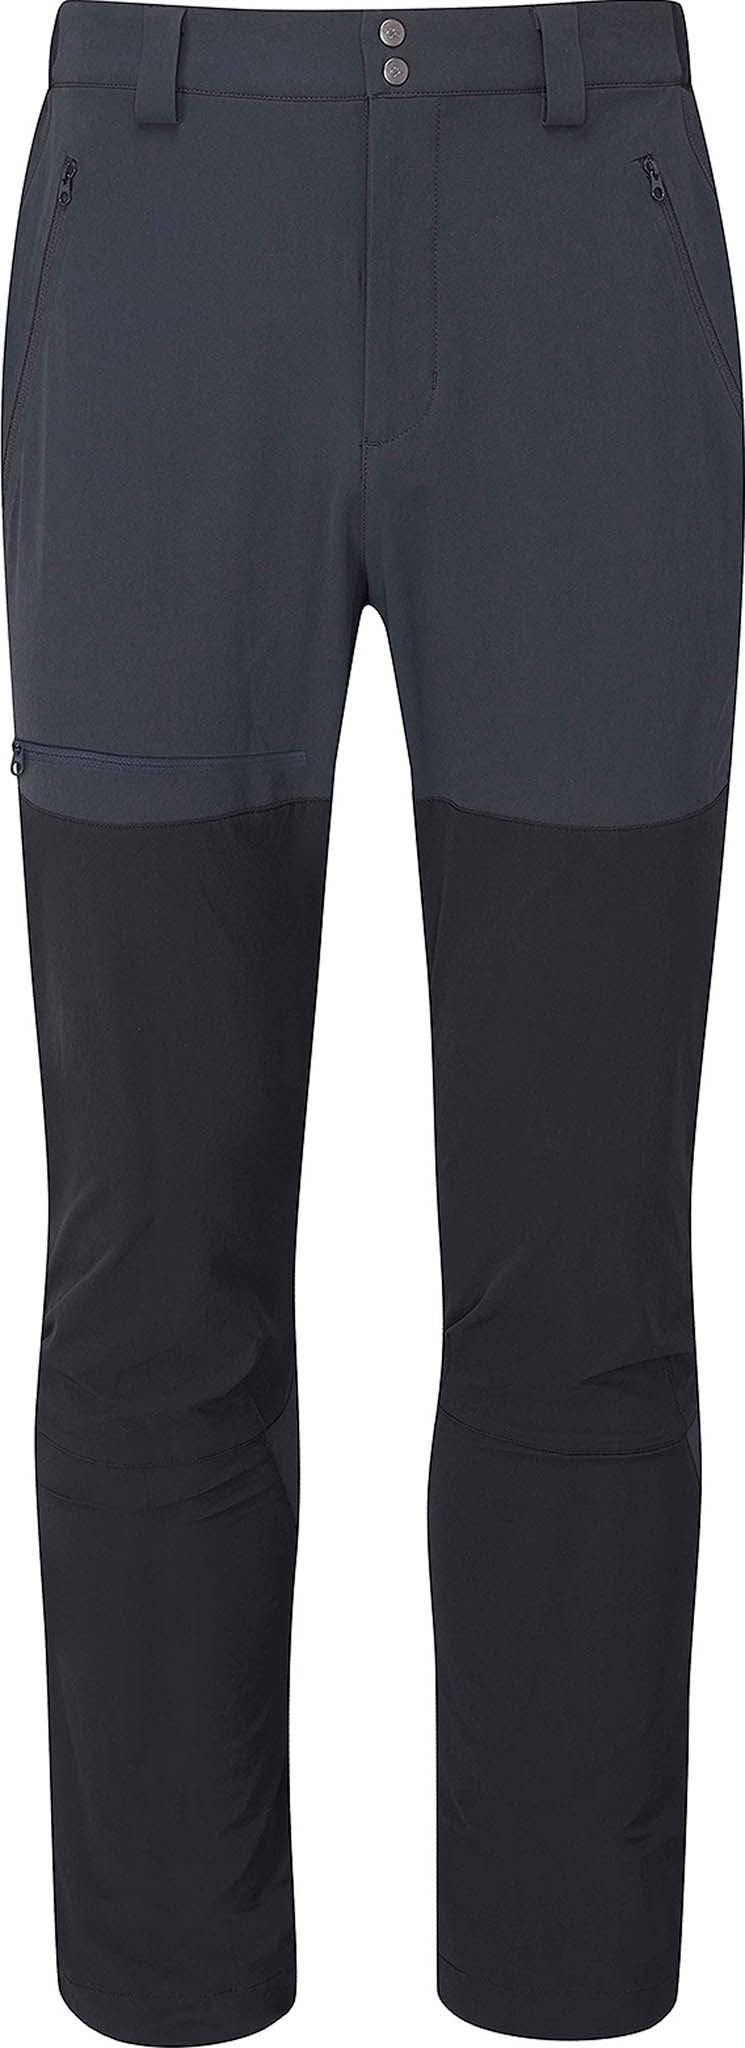 Numéro de l'image de la galerie de produits 1 pour le produit Pantalon de montagne de Torque - Homme